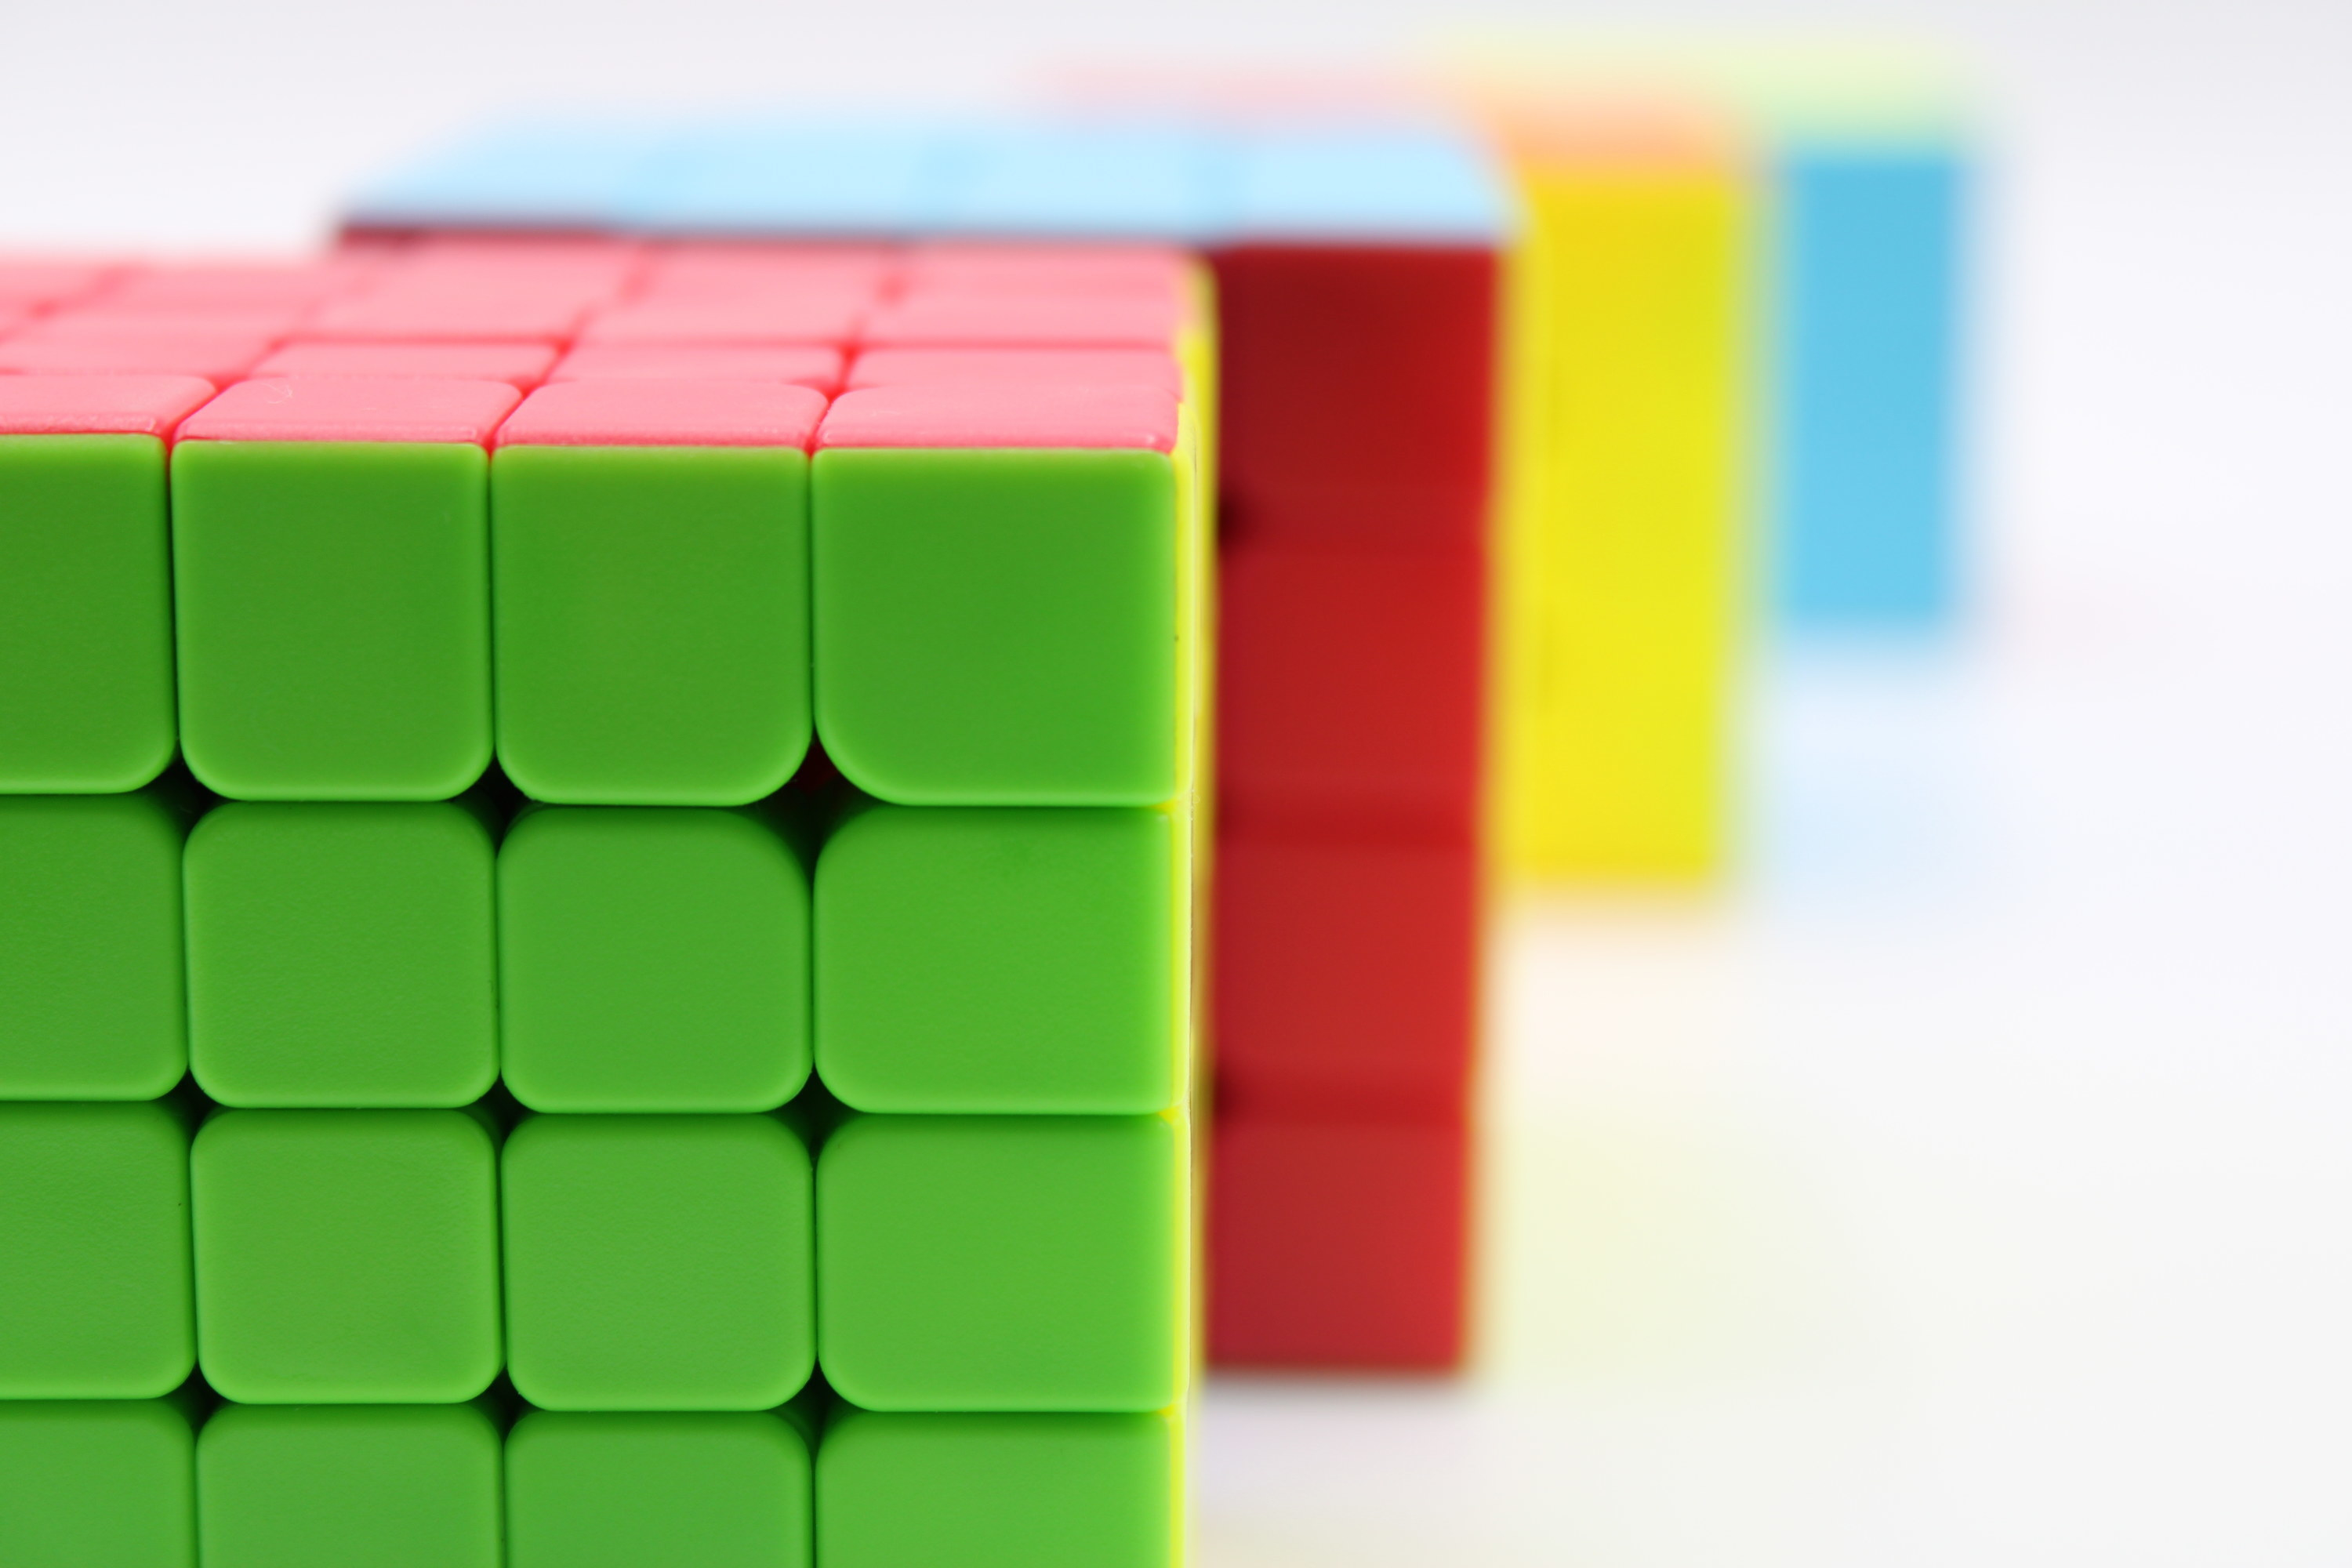 a row of rubix cubes